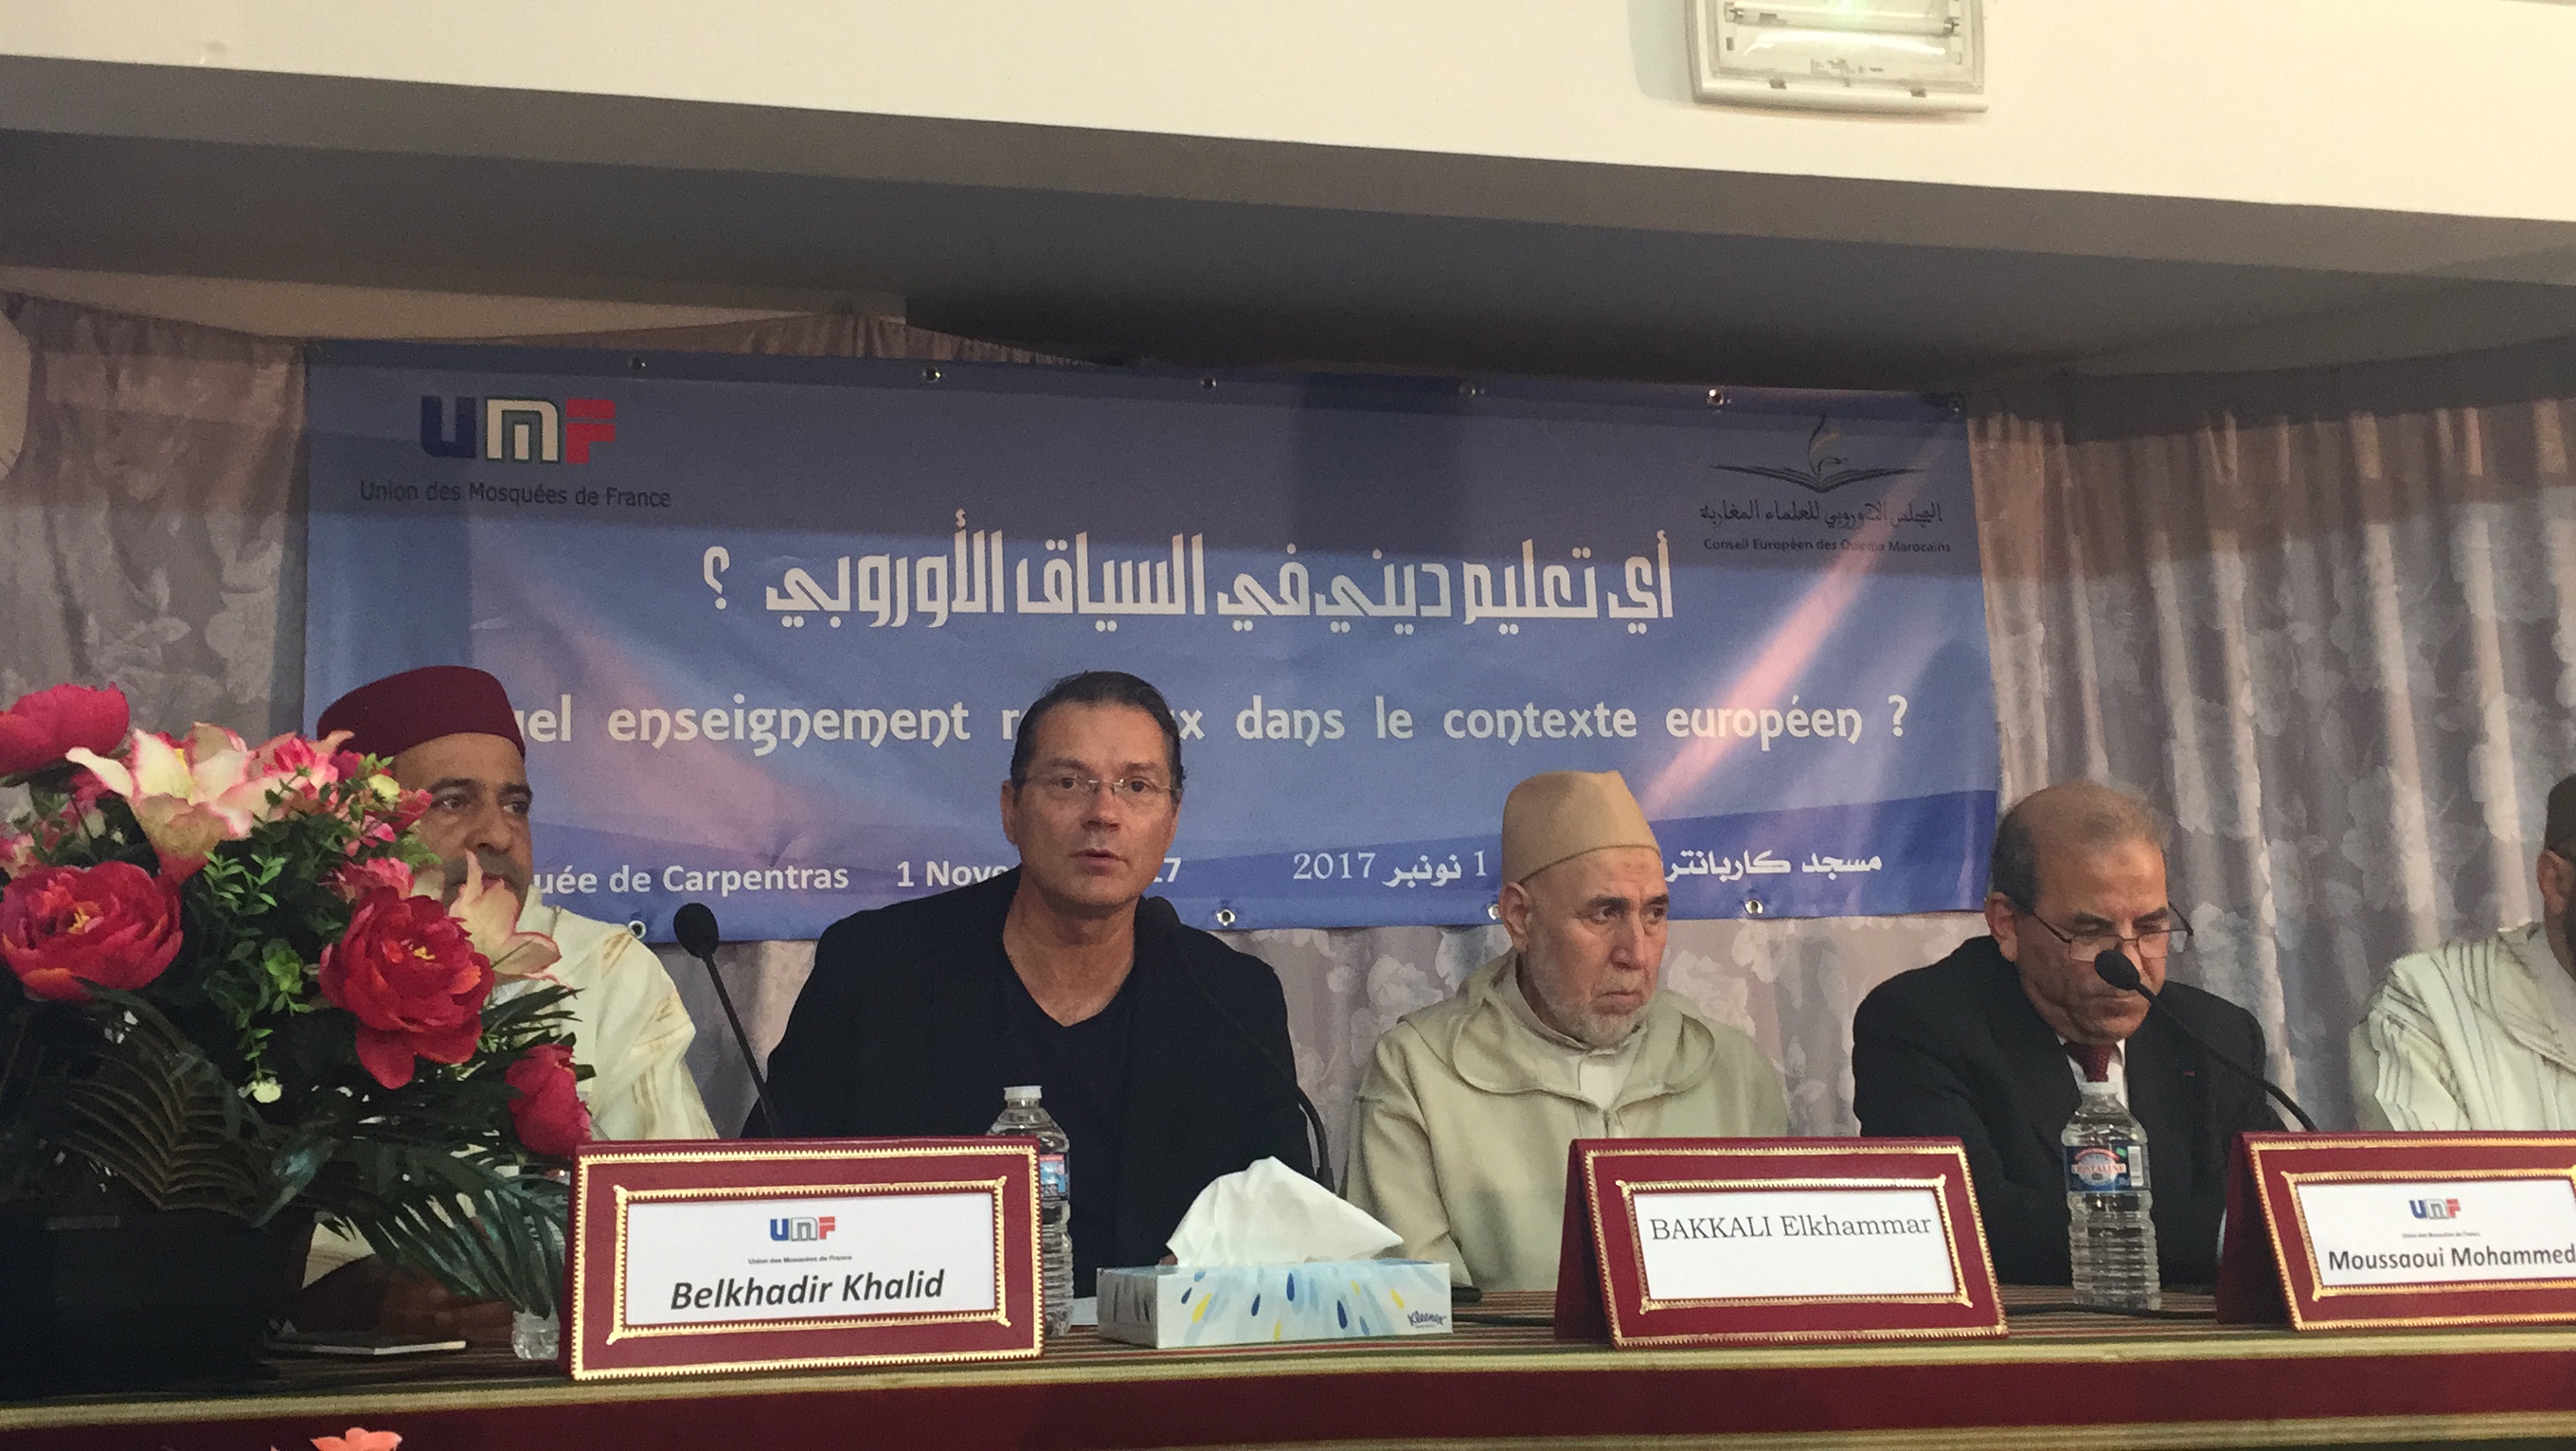 المجلس الأوروبي للعلماء المغاربة ينظم بفرنسا ملتقى حول التعليم الديني في السياق الأوروبي يبرز سماحة النموذج المغربي في التدين.